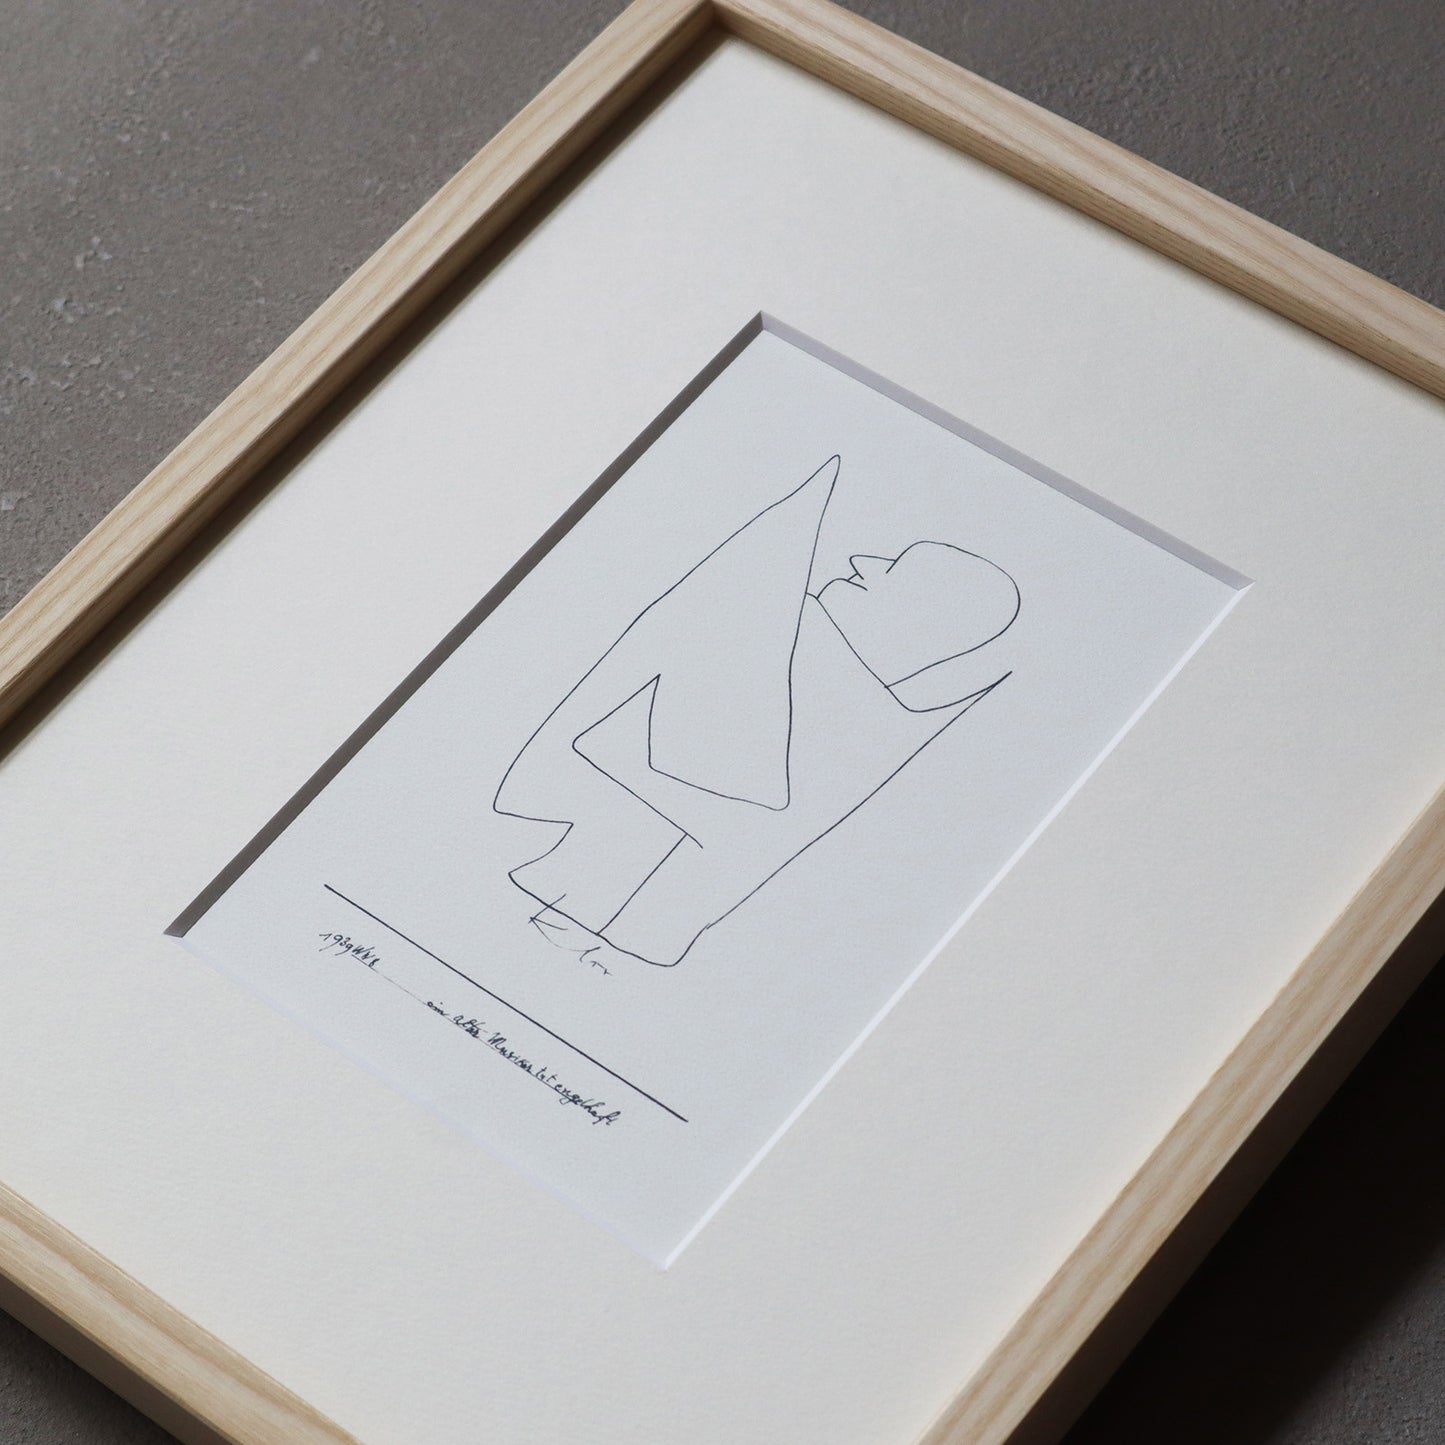 パウル・クレー「老いた音楽家が天使のふりをする」アートポスター（フレーム付き） / Paul Klee “ein alter Musiker tut engelhaft” Art Frame